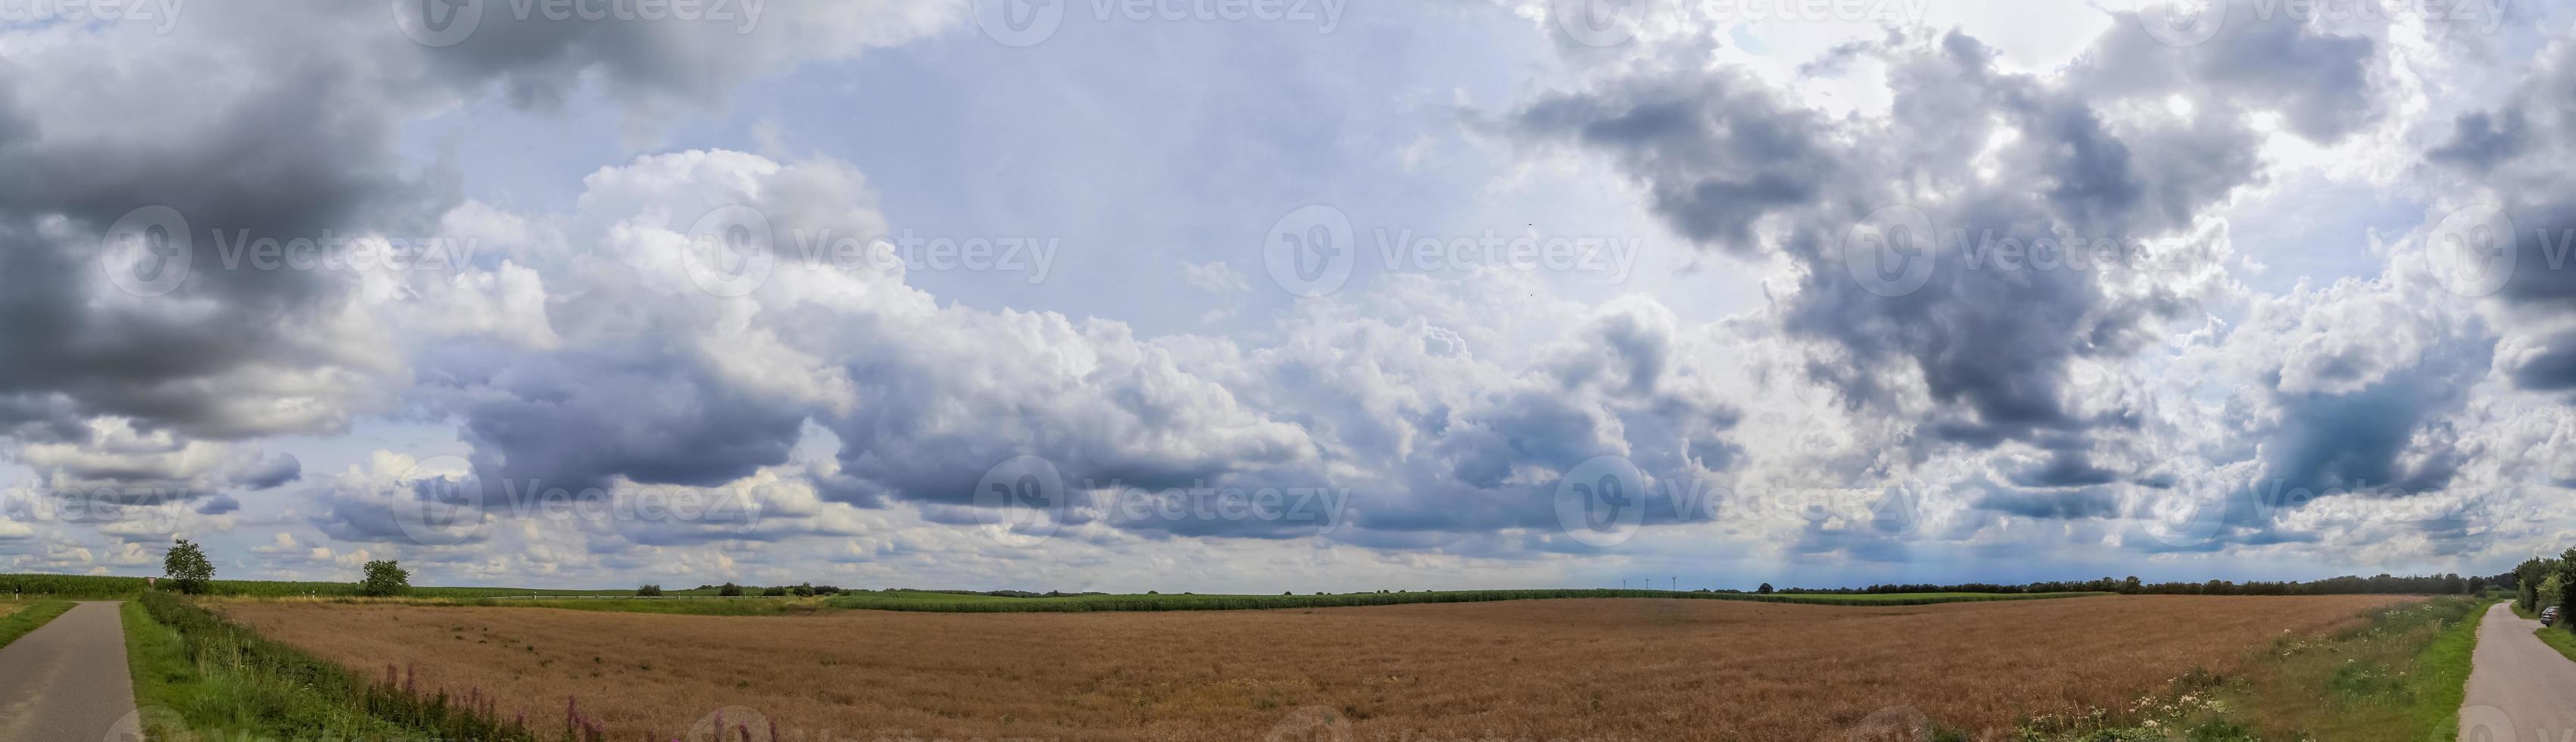 panorama van verbijsterend wolken in de lucht bovenstaand een agrarisch veld. foto